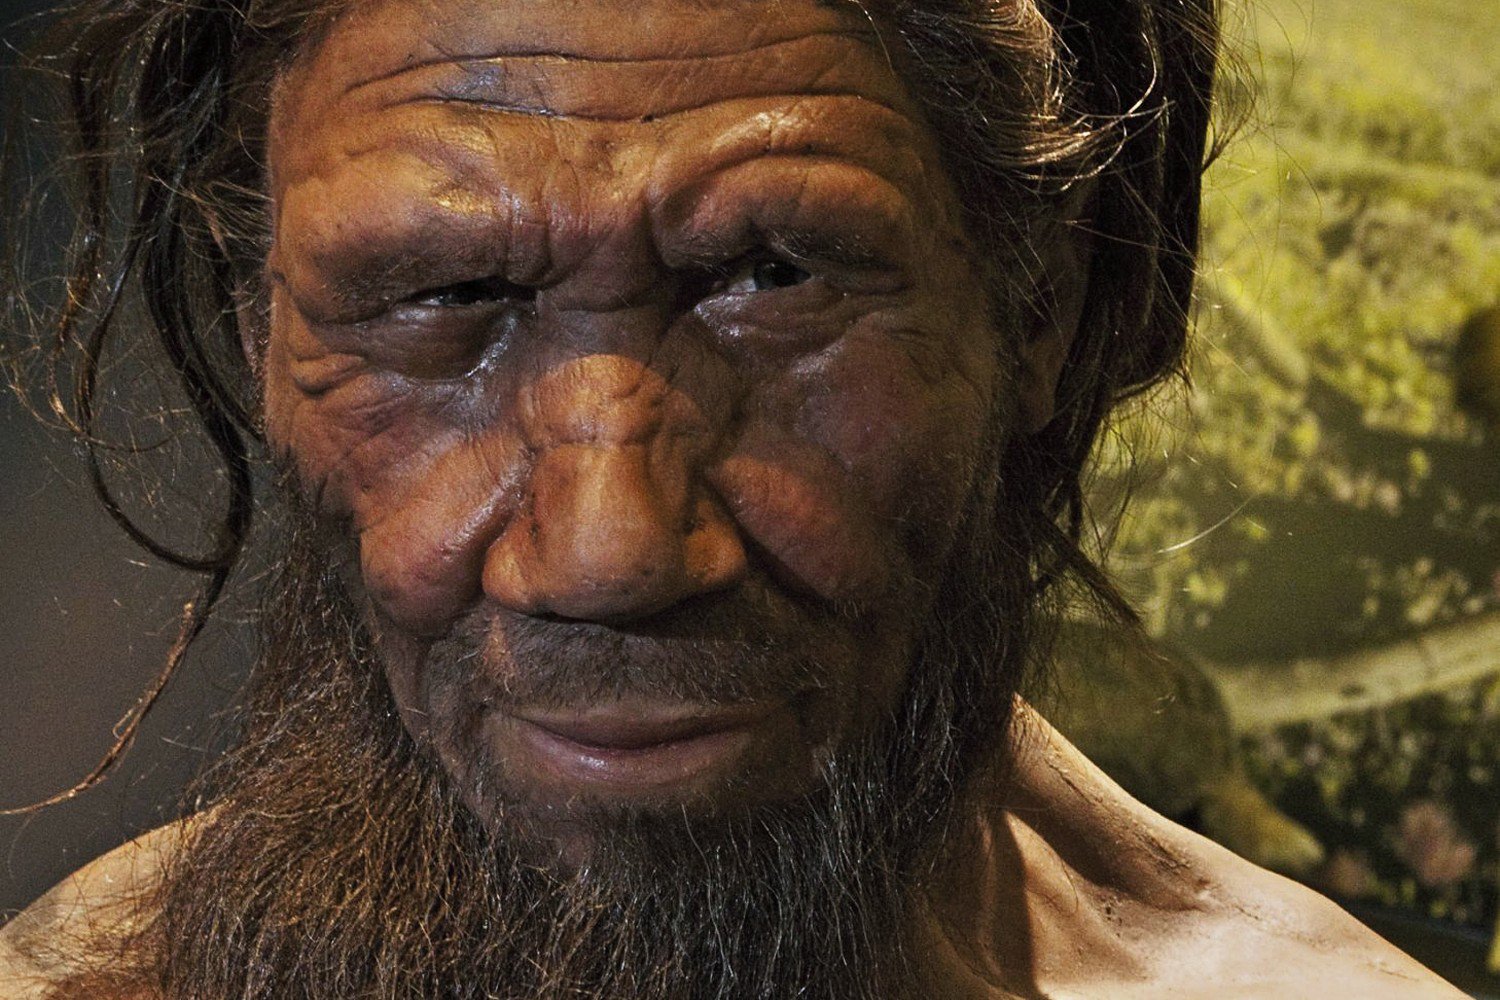 En direct «mini-cerveaux» de l'homme de néandertal raconte que fait notre cerveau spécial